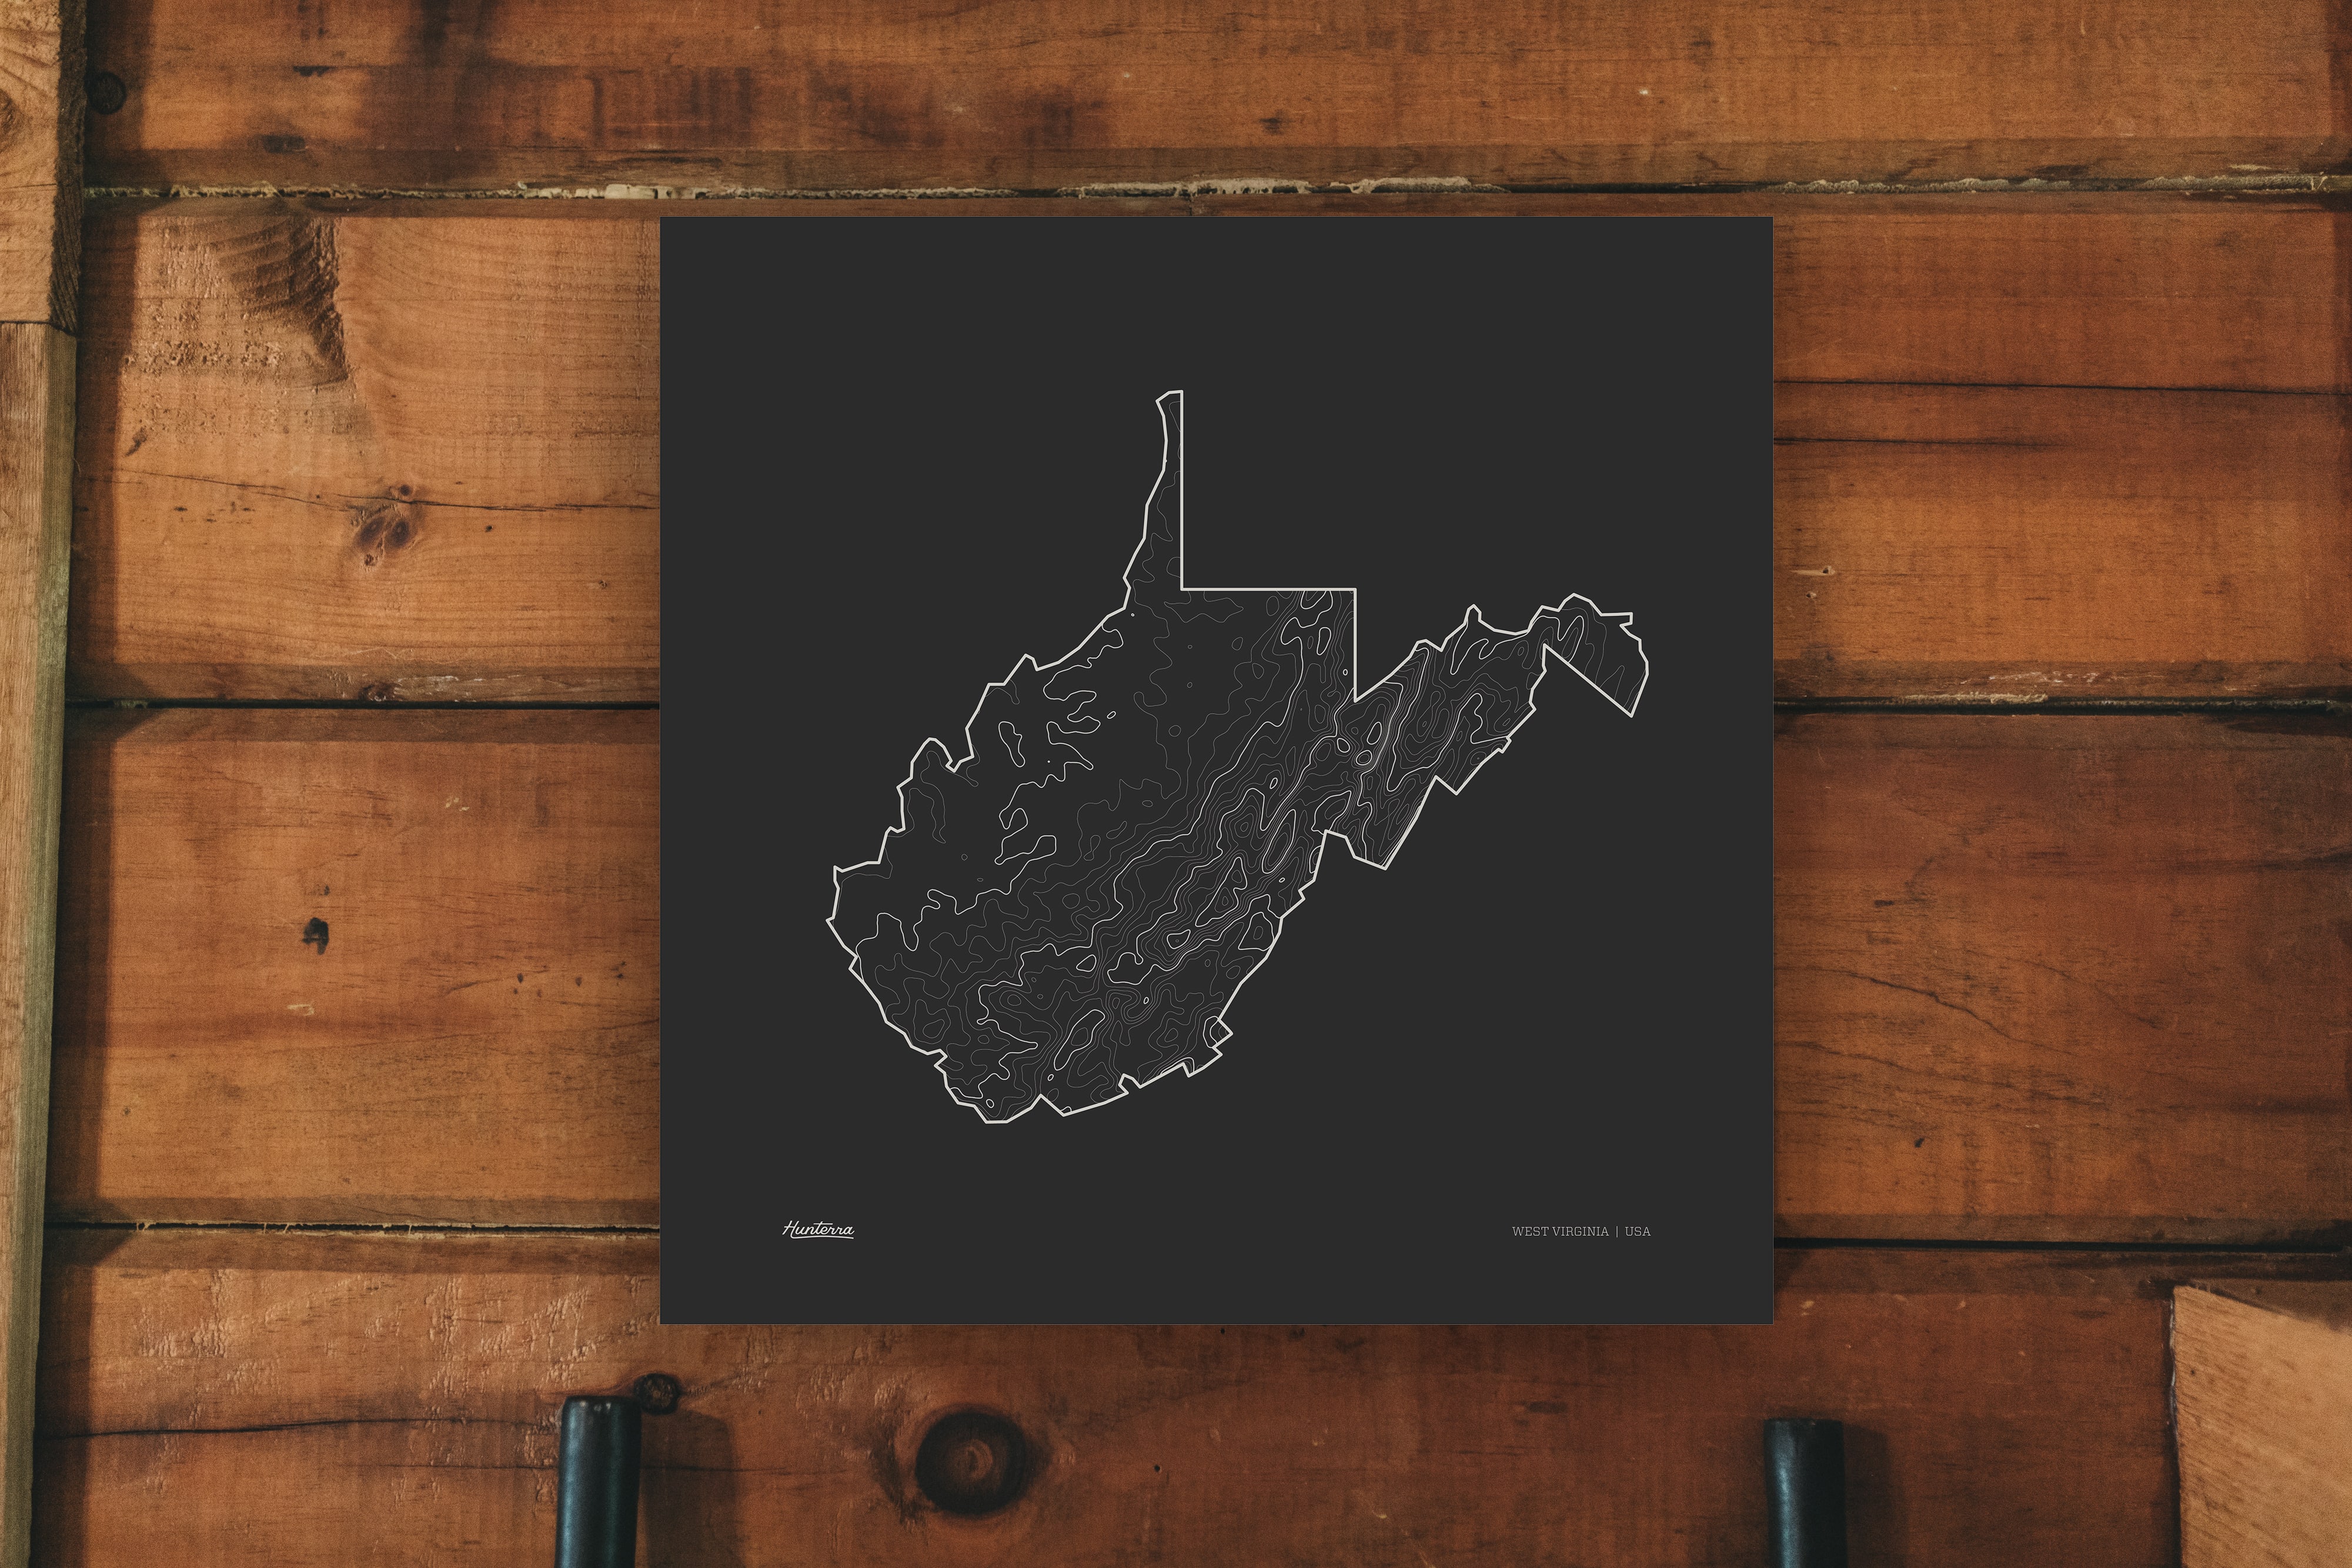 West Virginia Topo Map